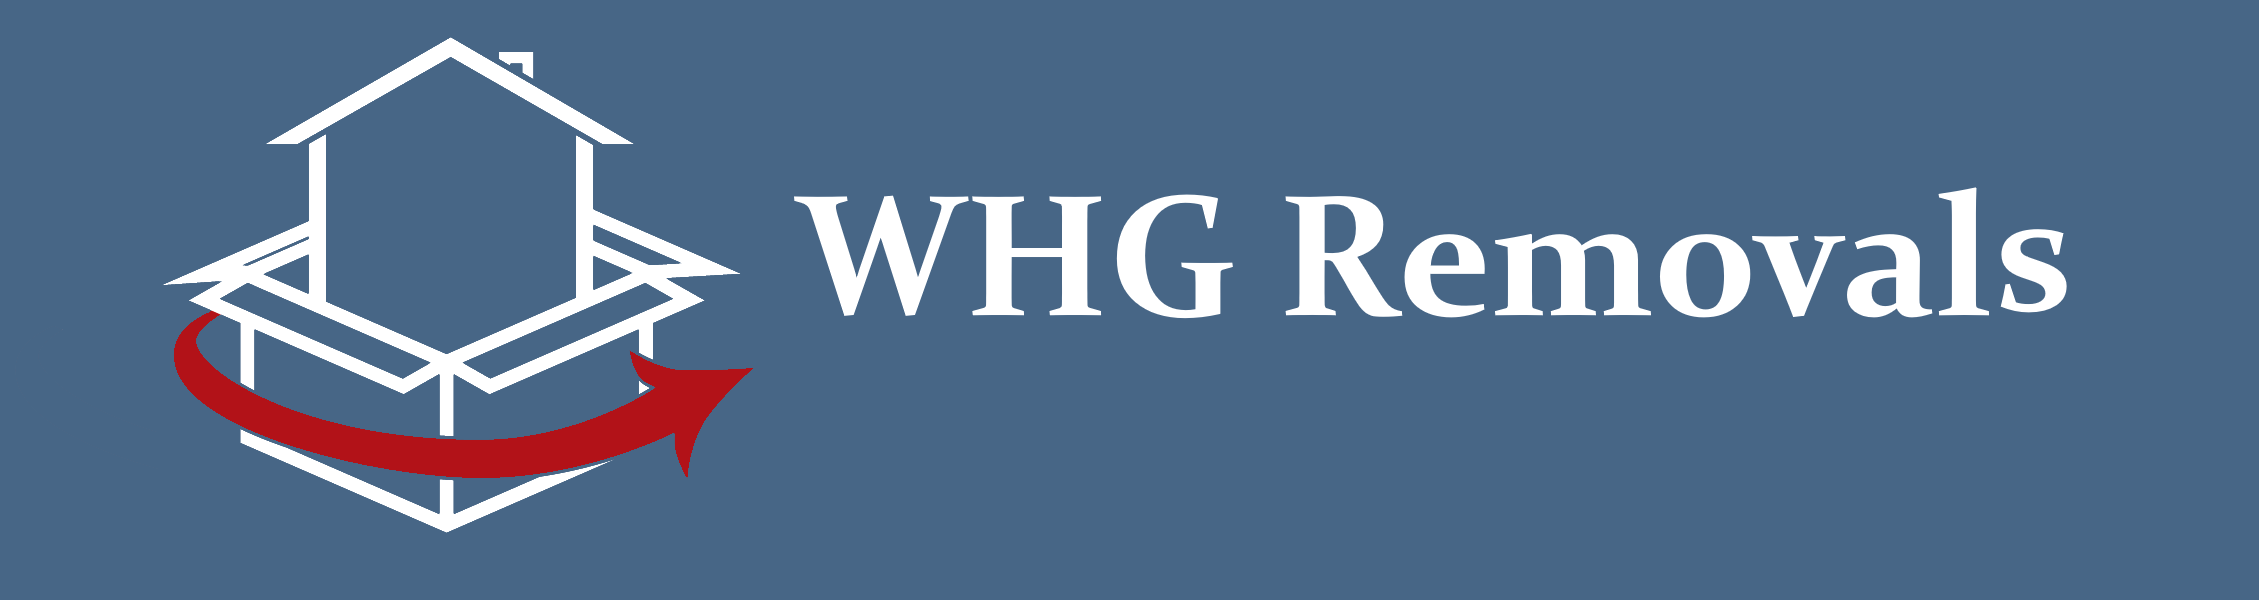 WHG Removals Ltd